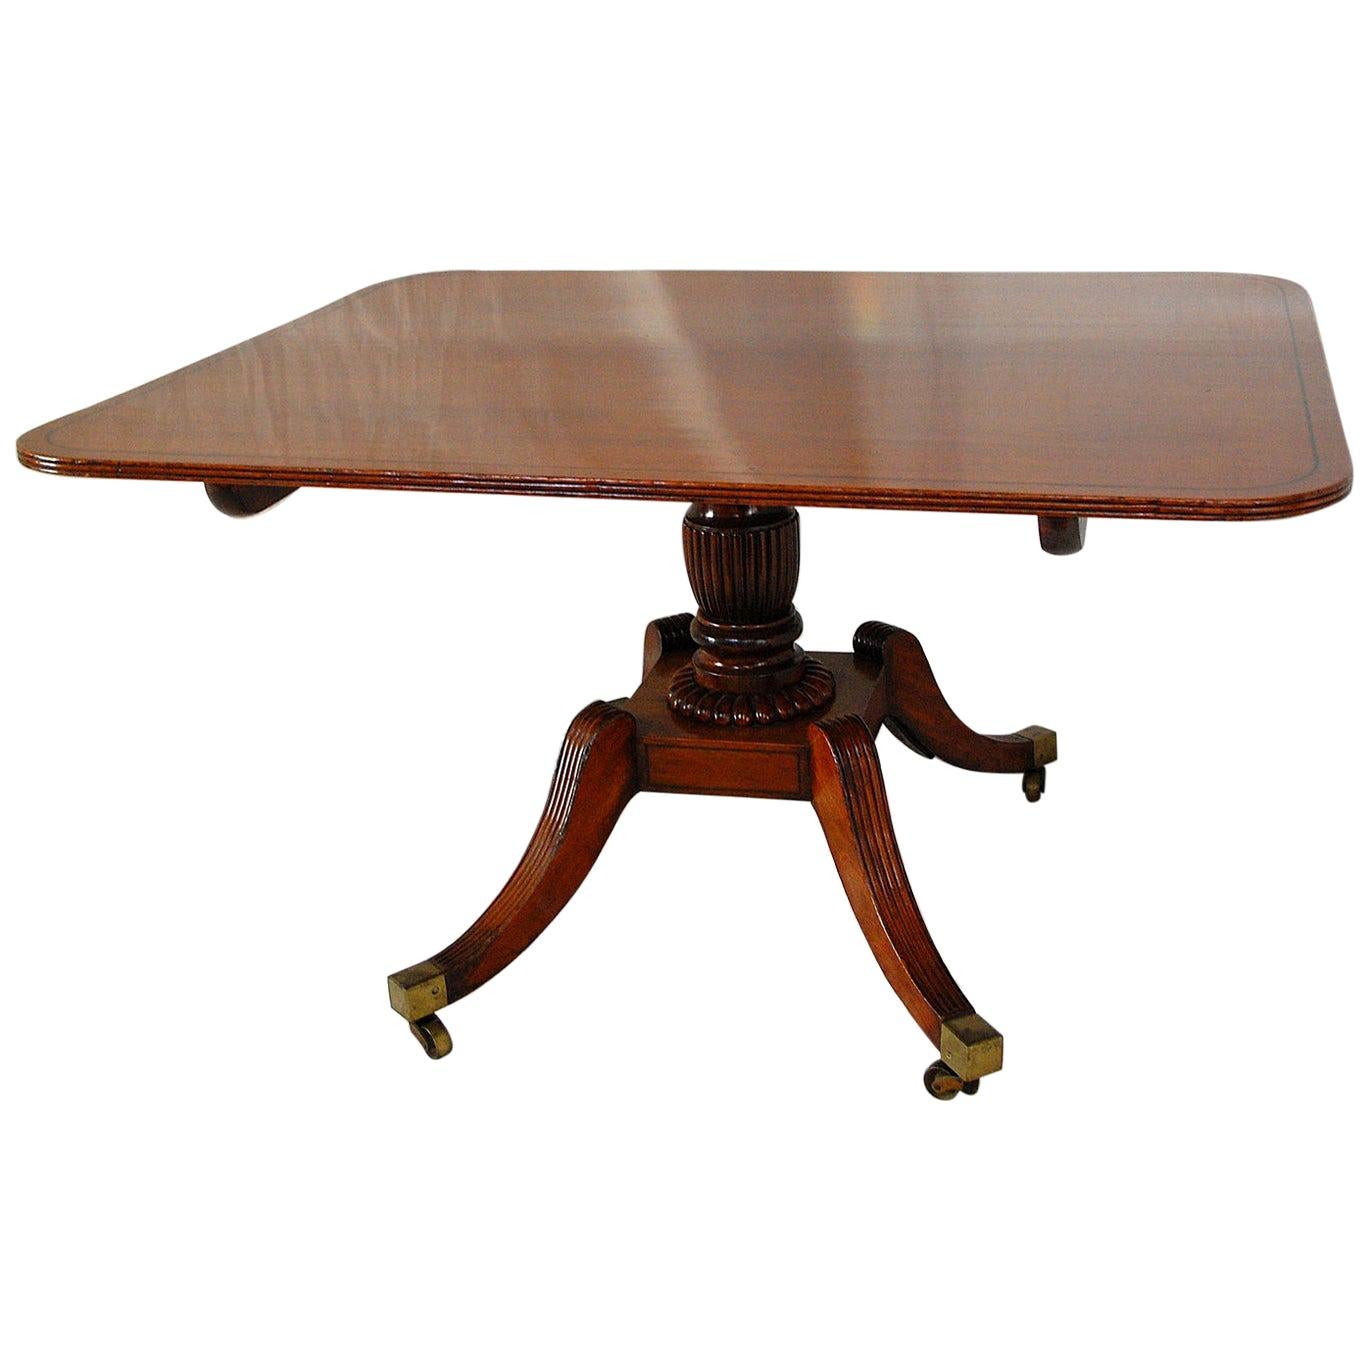 English Regency Period Mahogany Single Pedestal Dining Table with Ebony Stringin